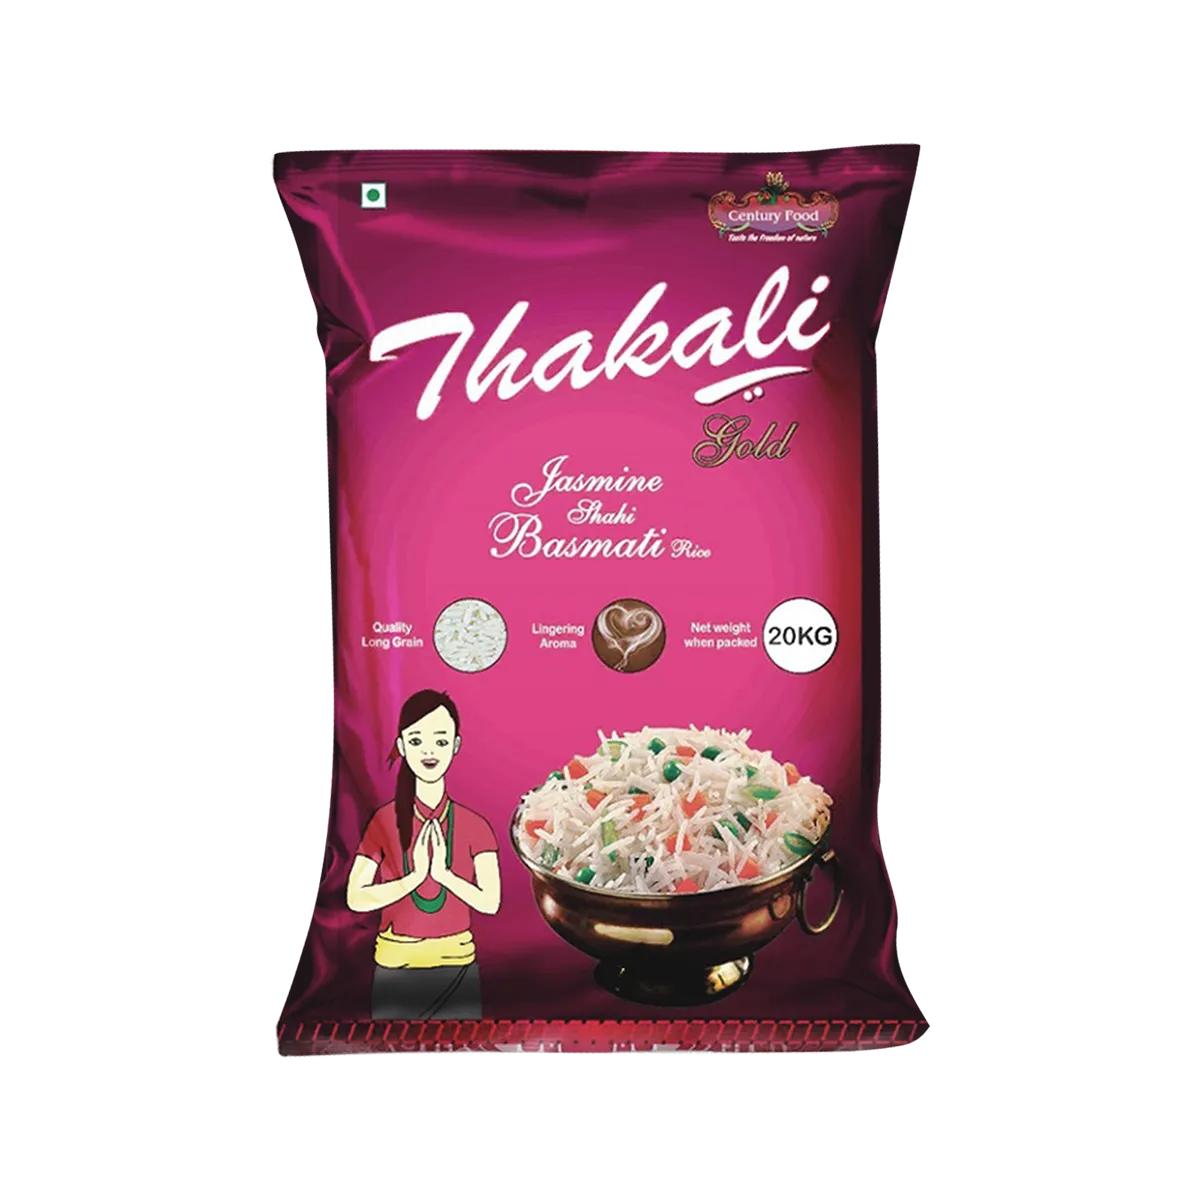 Thakali Jasmine Shahi Basmati Rice 20 KG, 5KG and 1KG